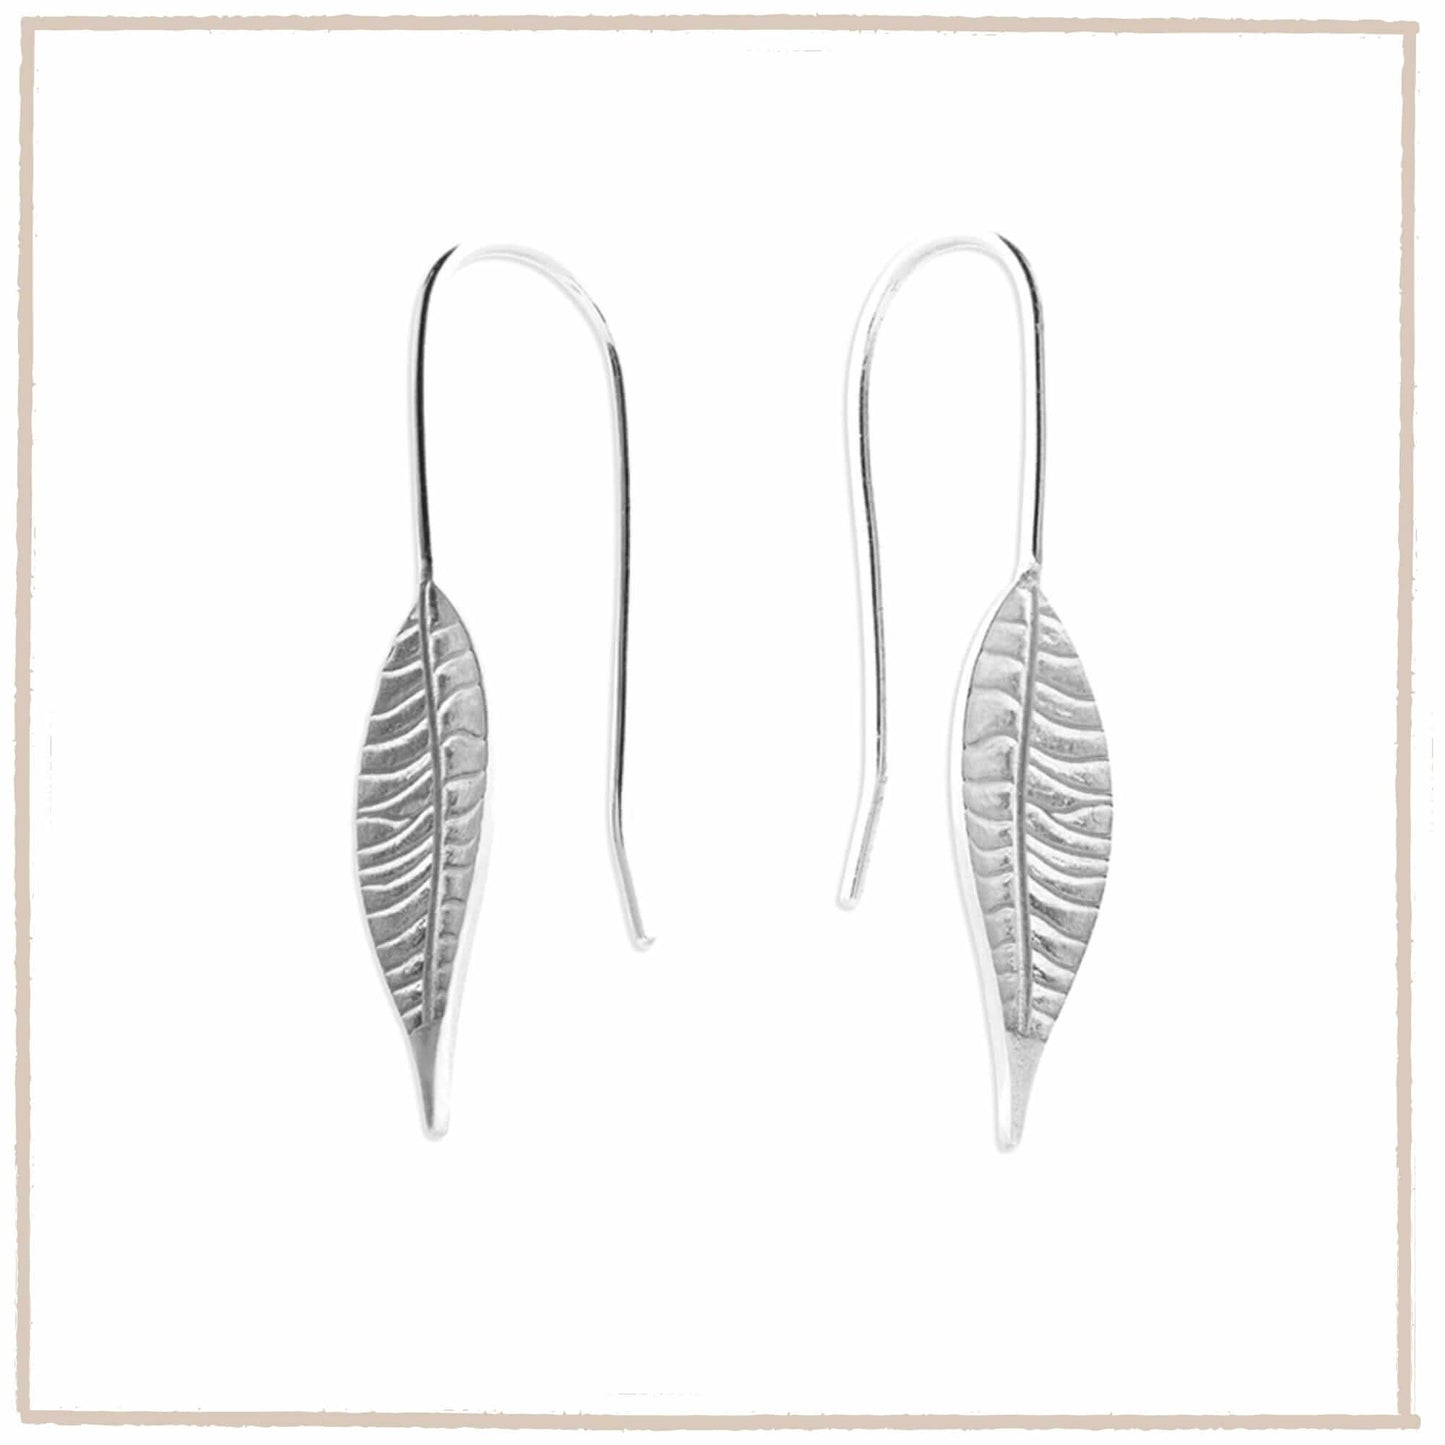 Willow Leaf Sterling Silver Narrow Hook Earrings - Twelve Silver Trees